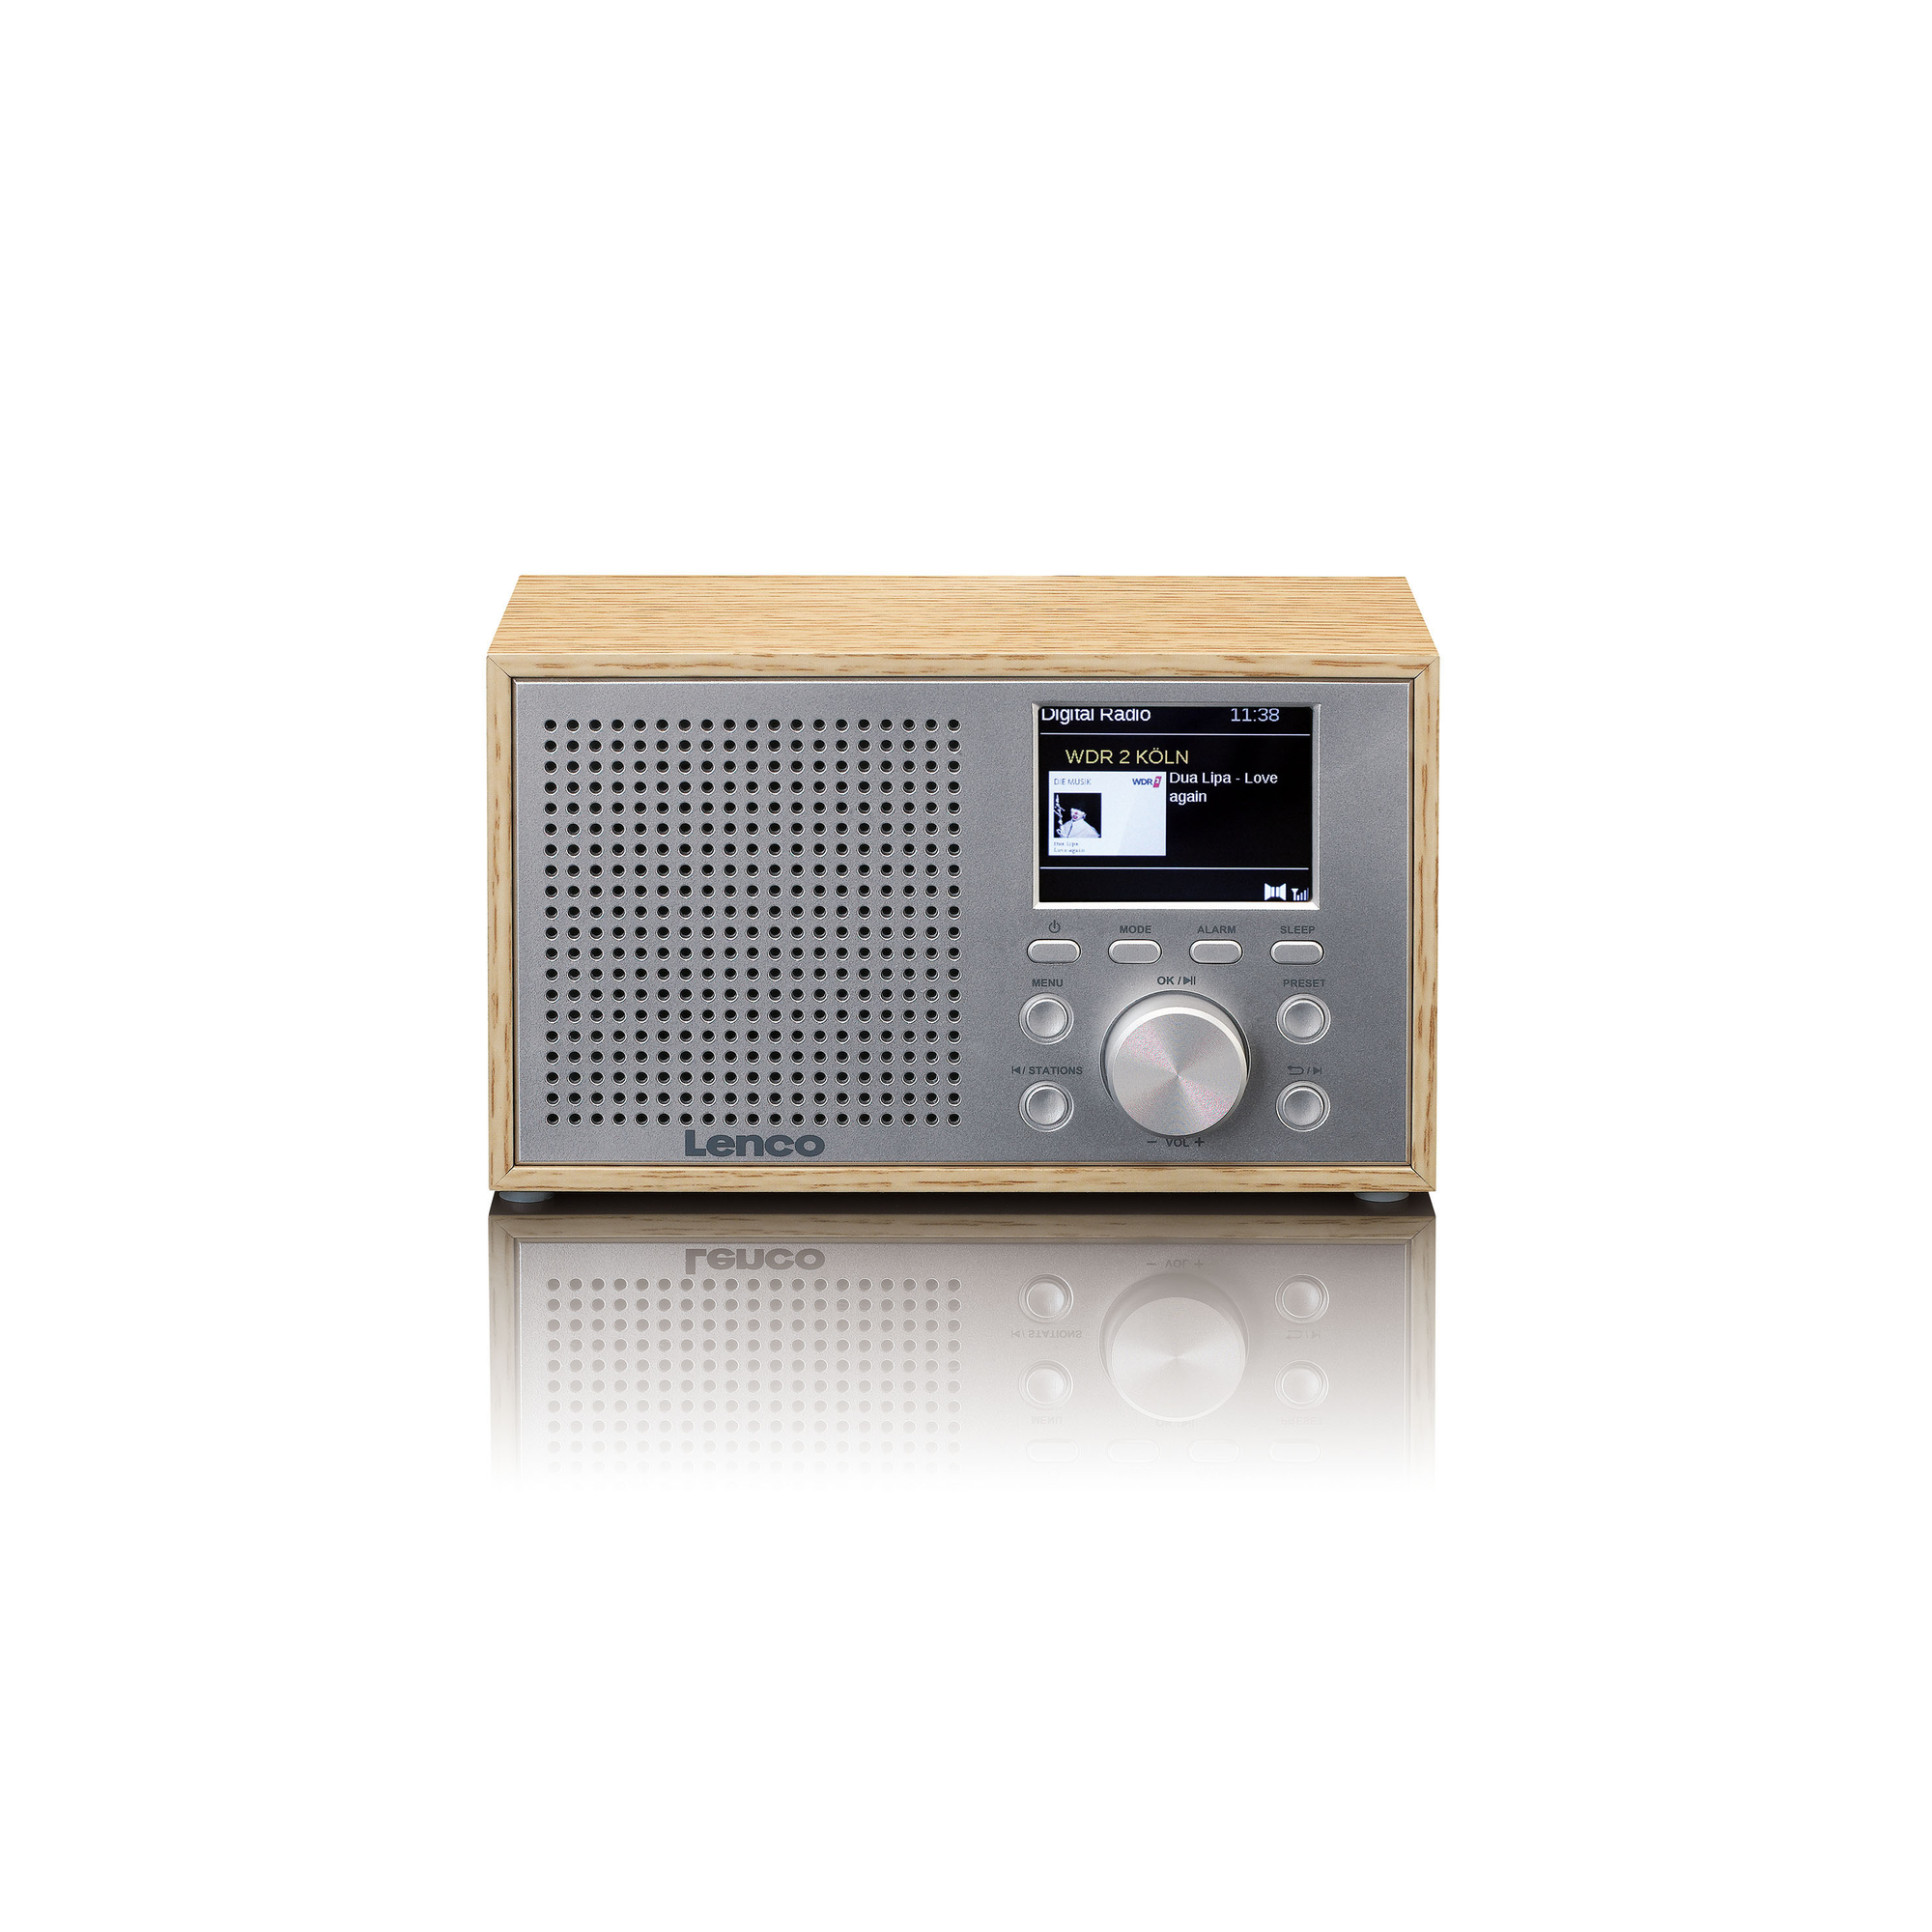 - FM, Radiowecker Bluetooth, DAR-017WH DAB+, DAB+,Tischradio,Tragbares DAB, Holz Radio, LENCO